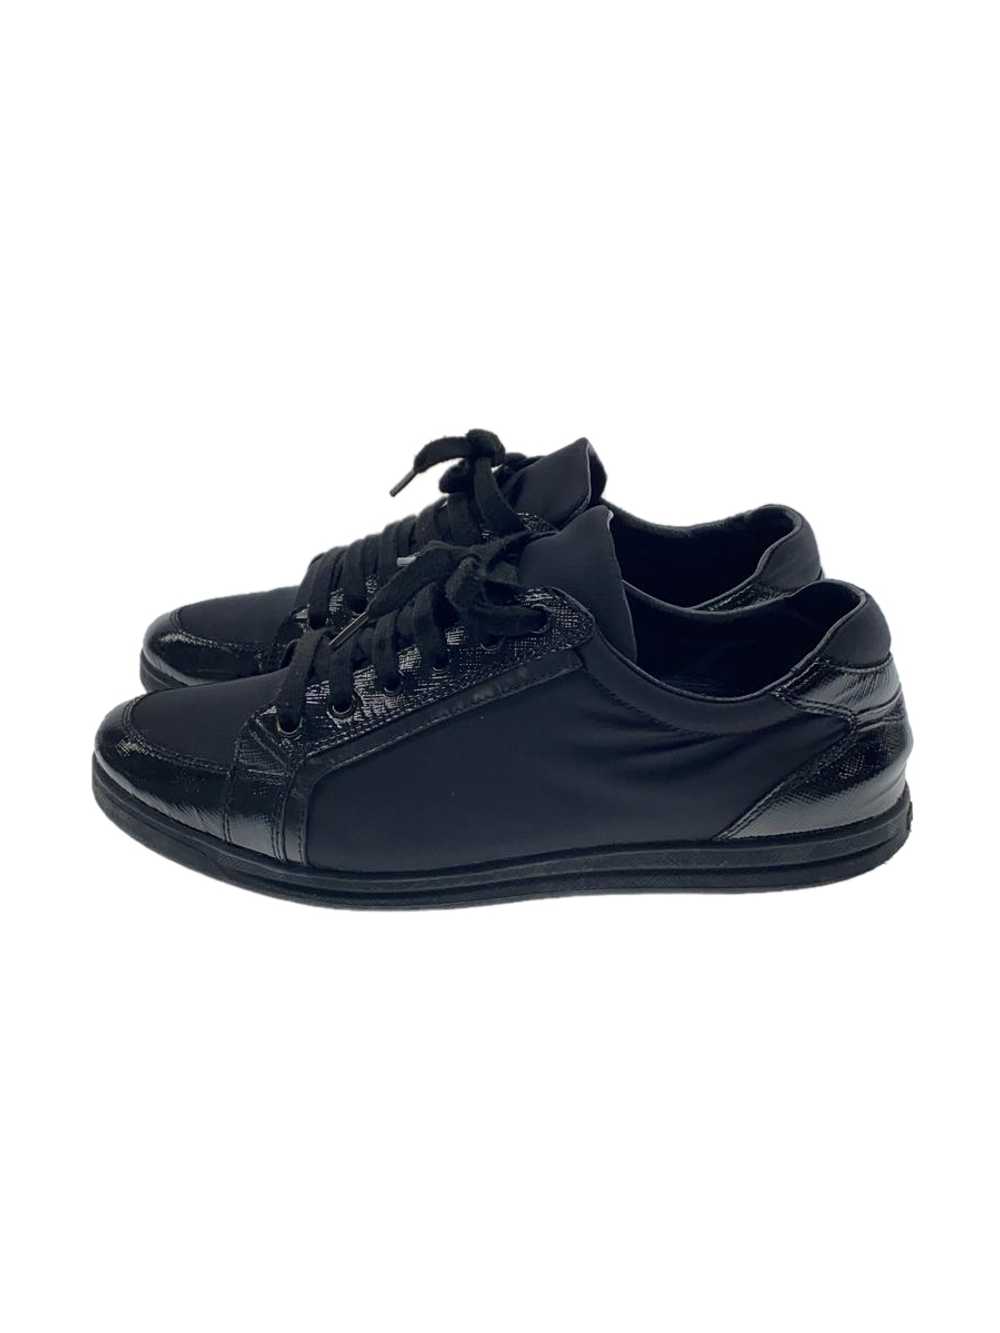 Prada Tessuto/Low Cut Sneakers/37/Blk/Black/Nylon… - image 1